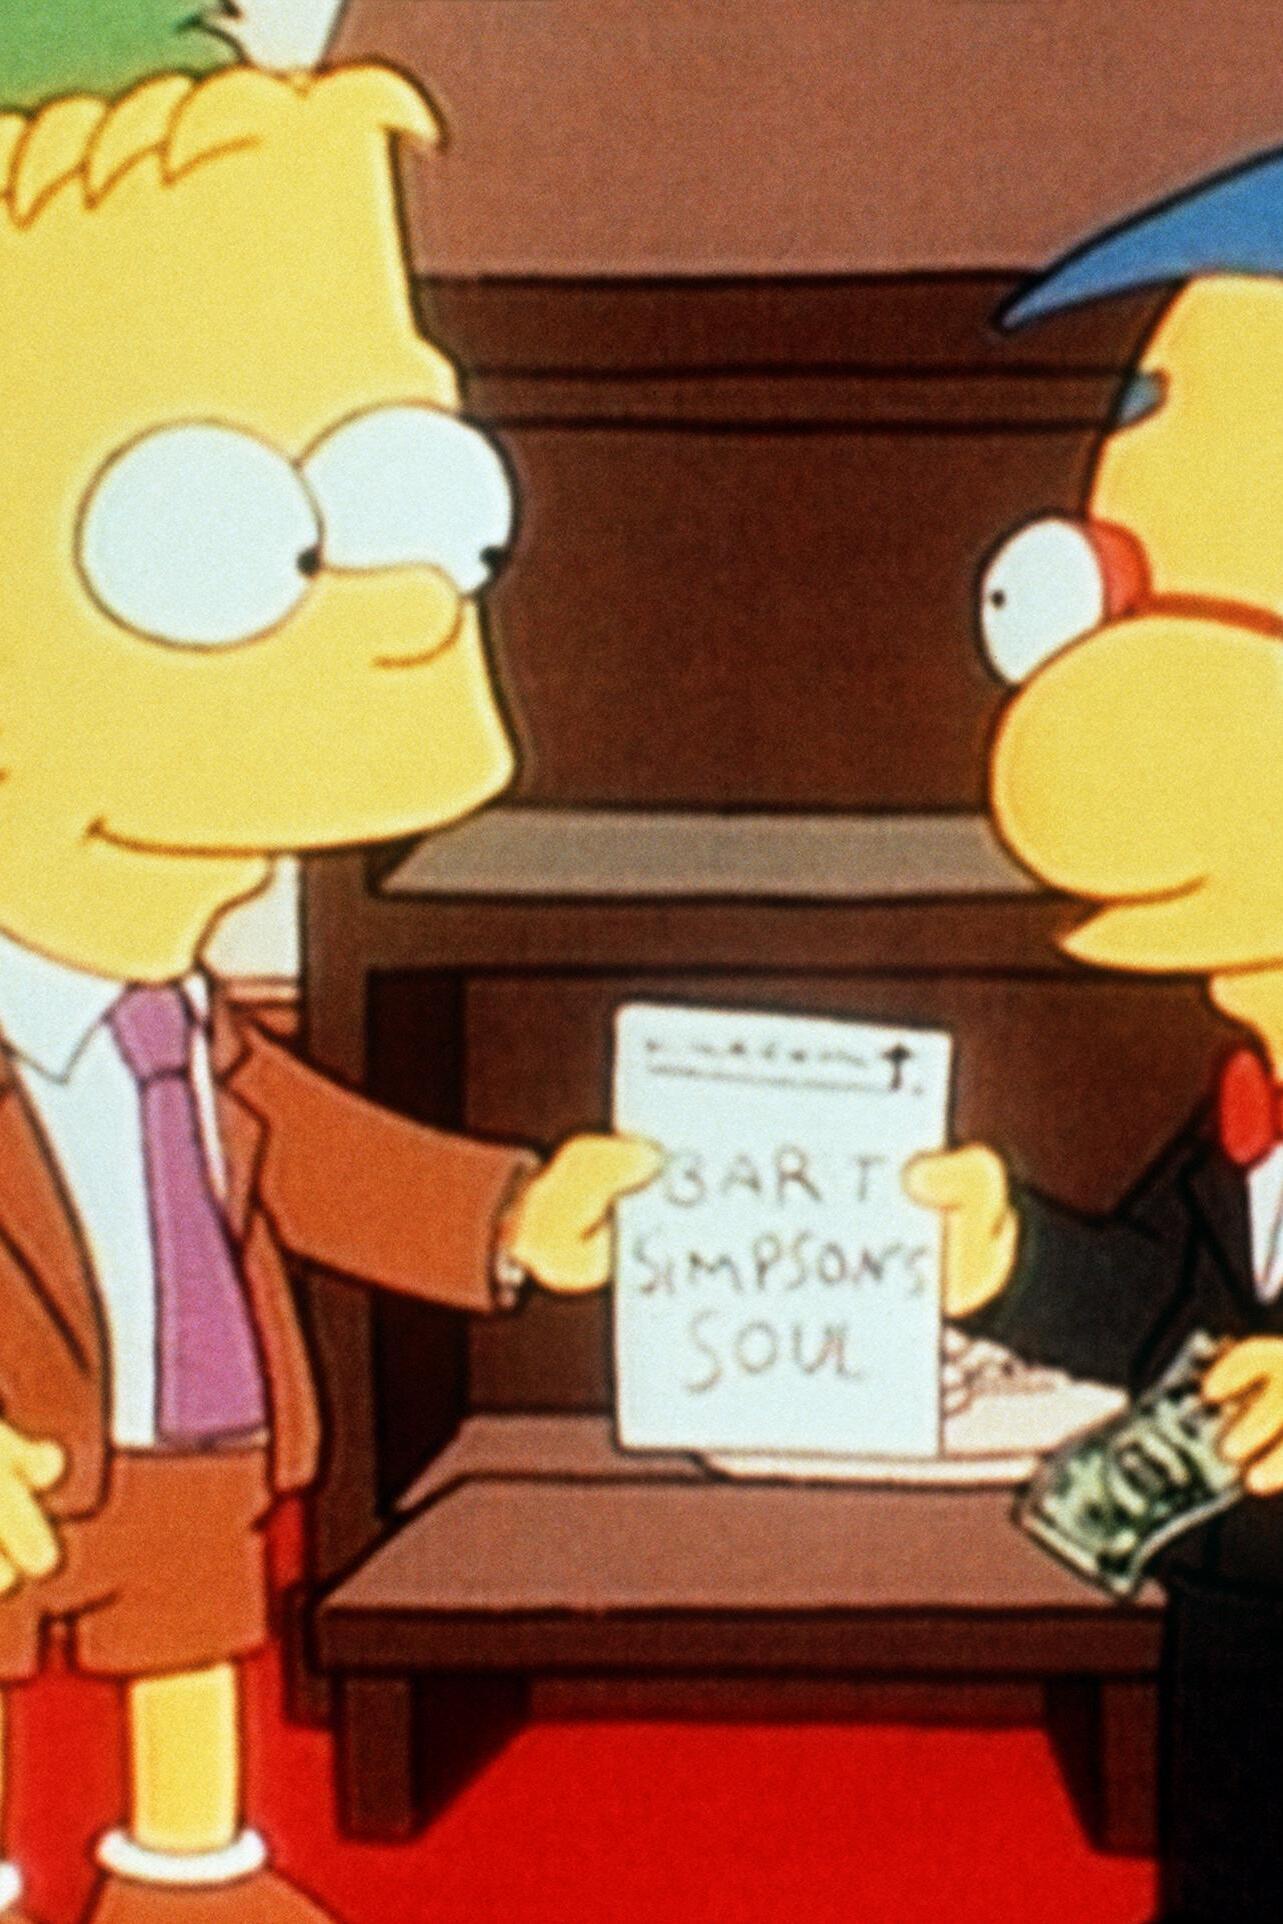 Les Simpson - Bart vend son âme